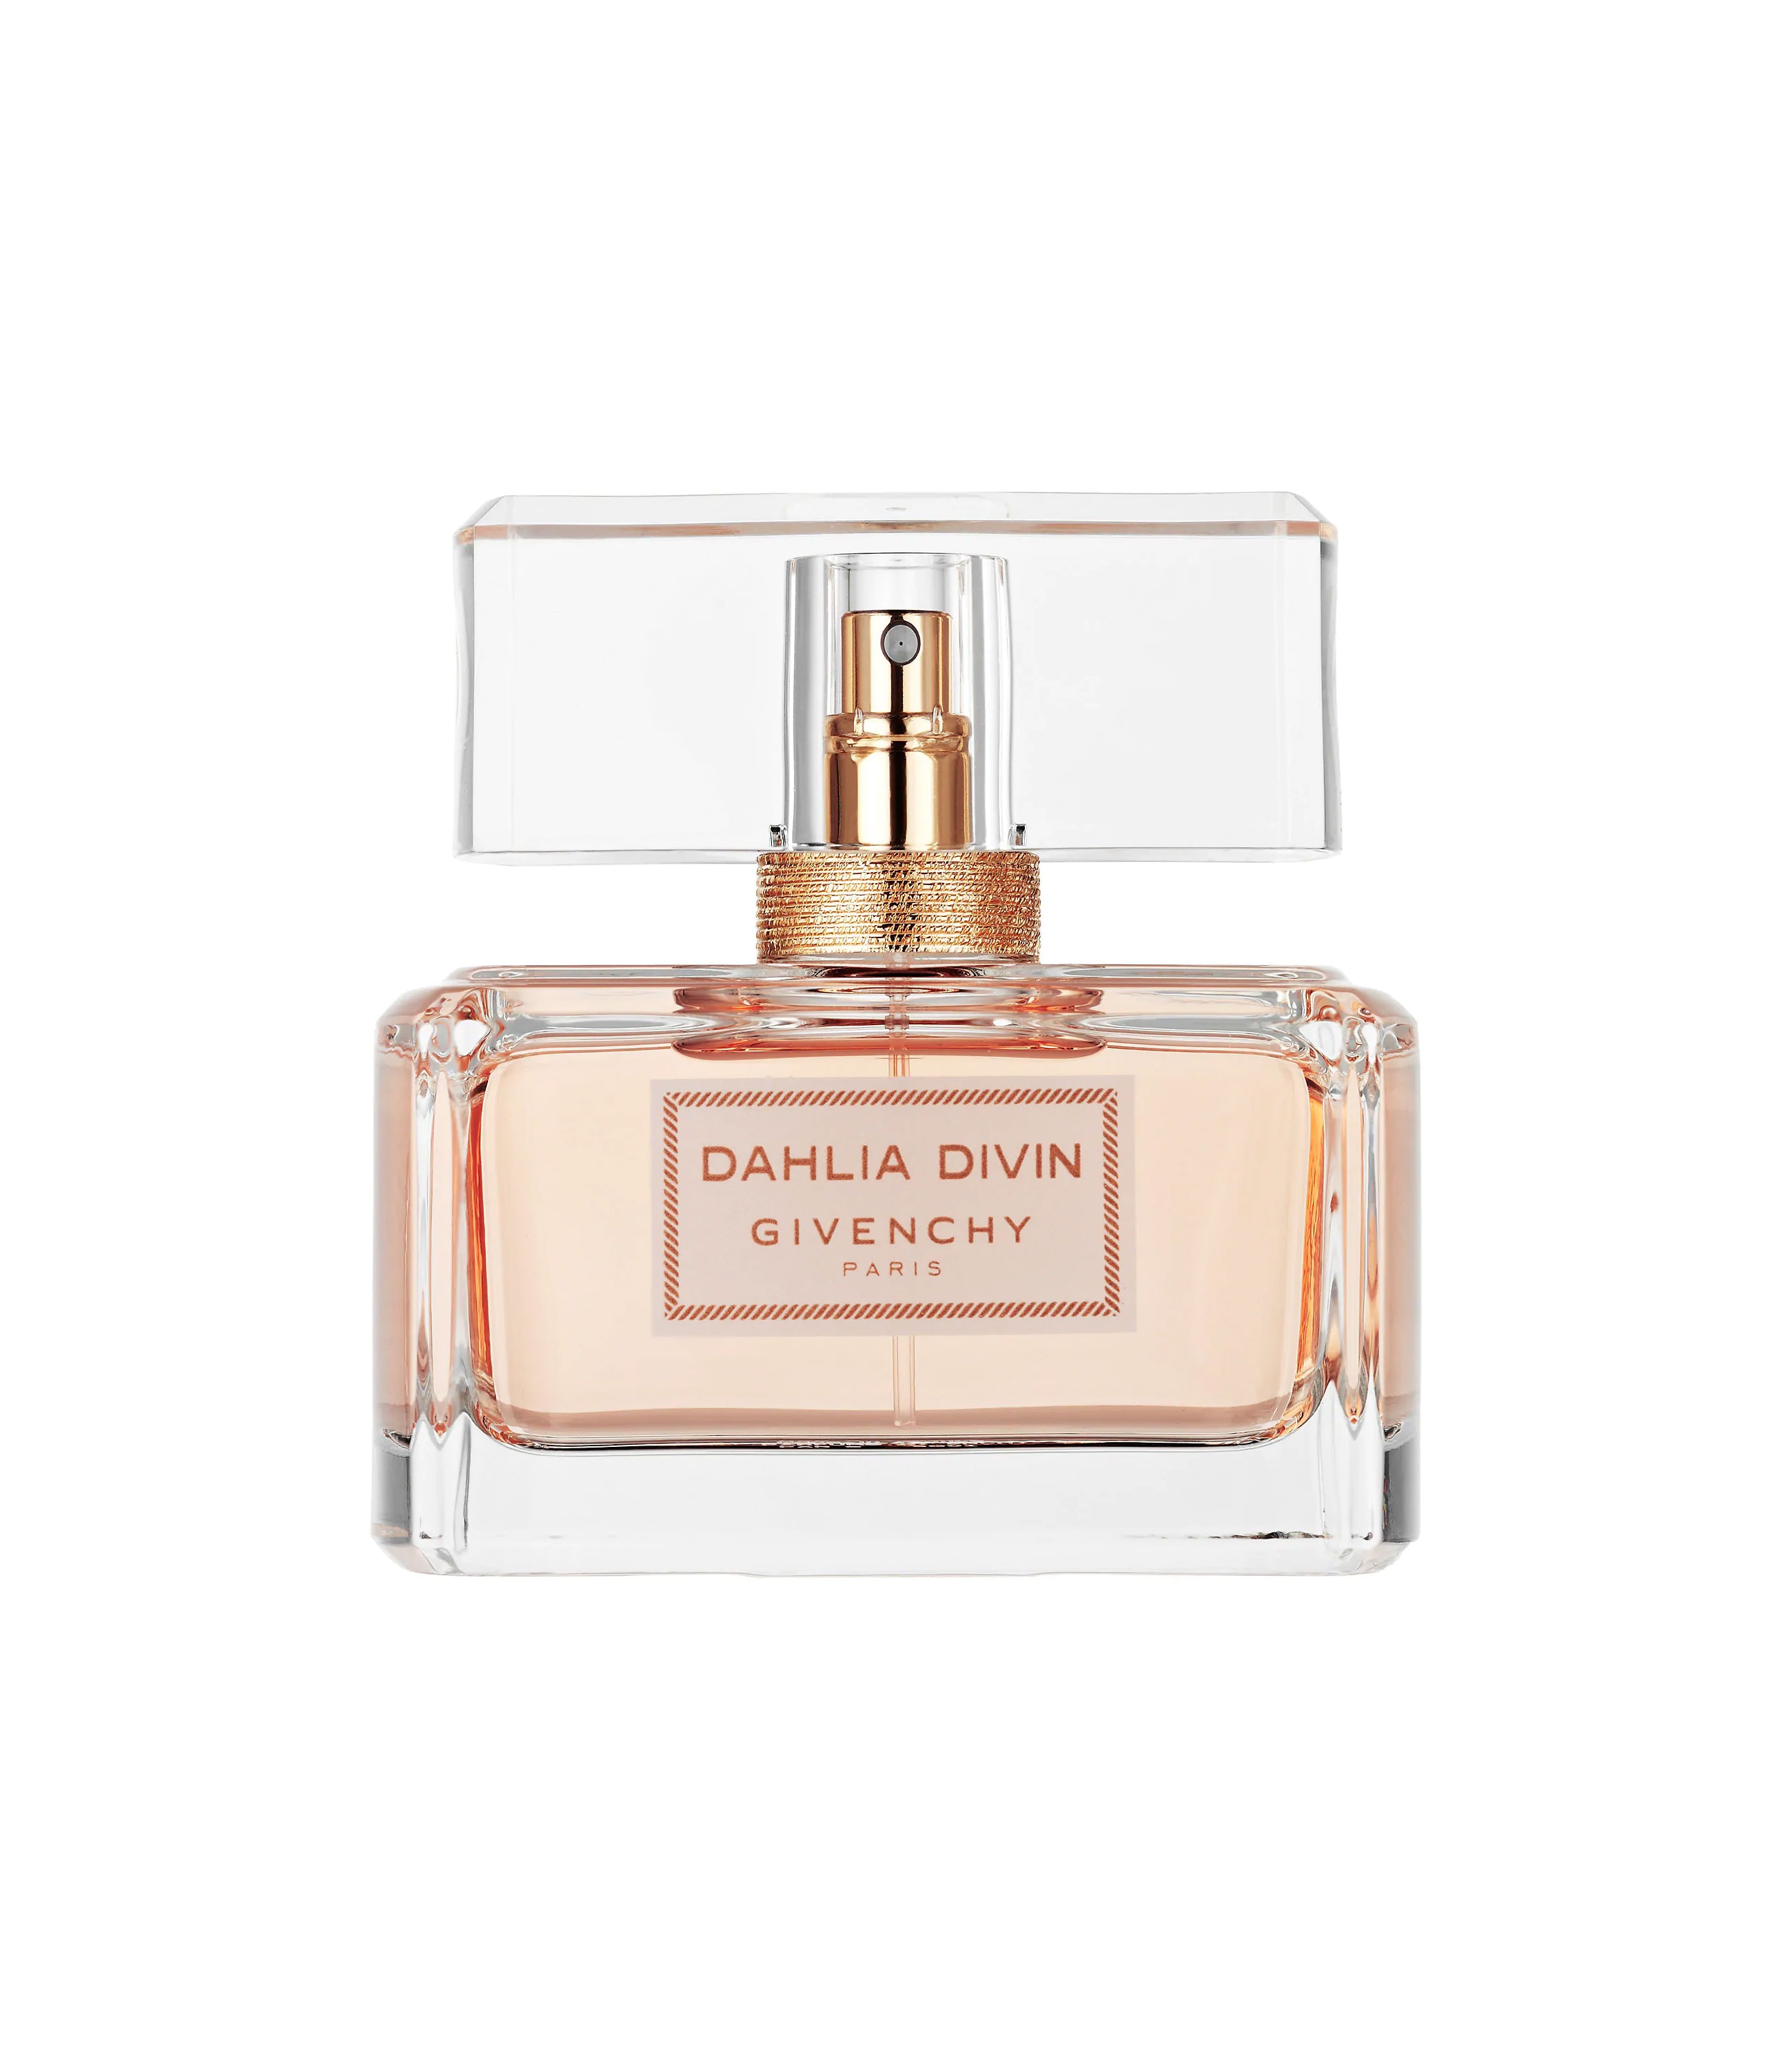 Dahlia Divin EDT » Givenchy » The Parfumerie » Sri Lanka